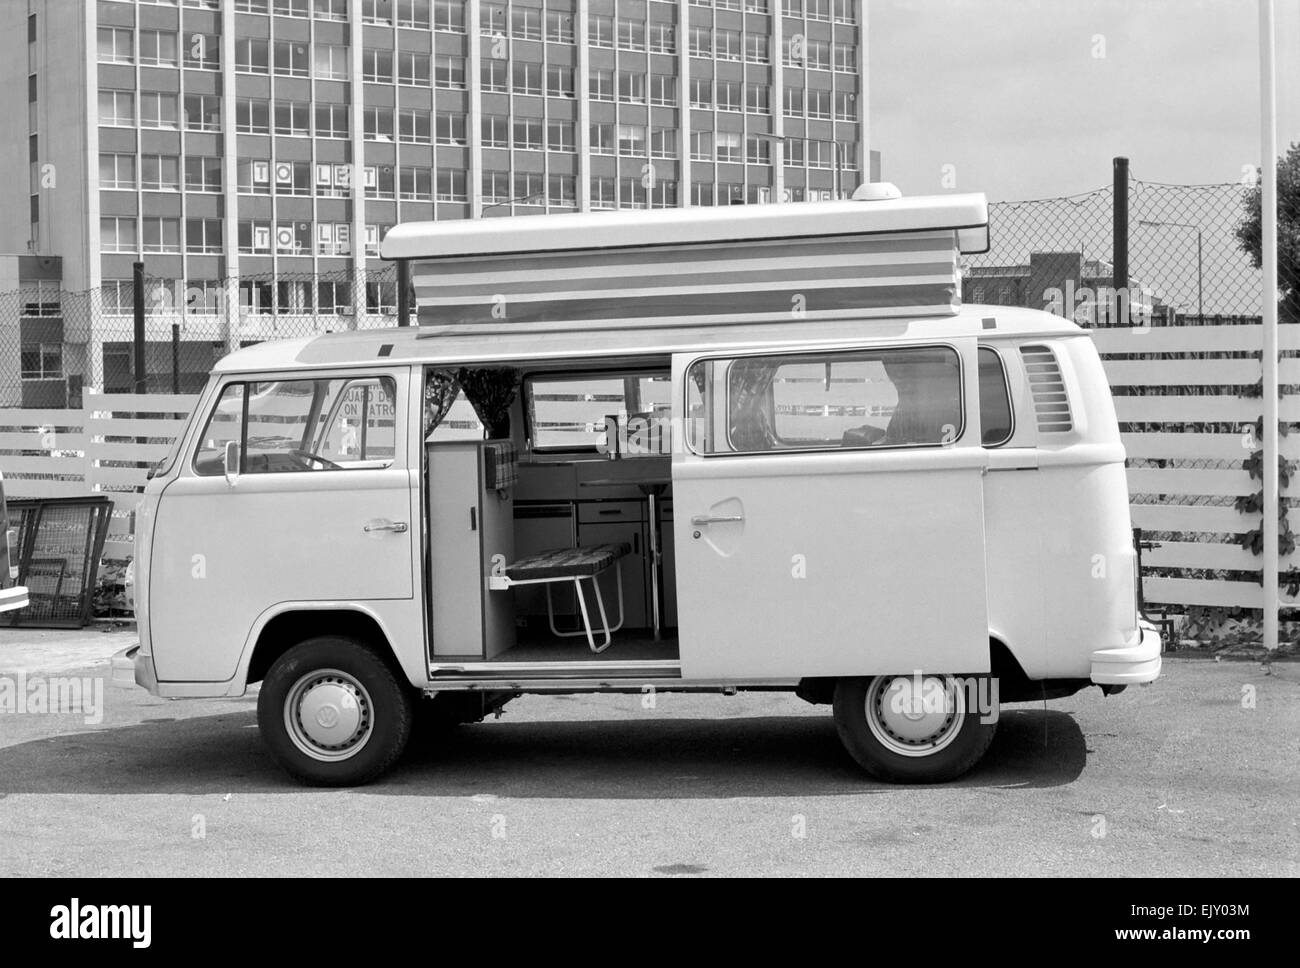 Volkswagen Devon Moonraker motor caravan. August 1978 78-3944-005 *** Local Caption *** planman -  - 03/02/2010 Stock Photo